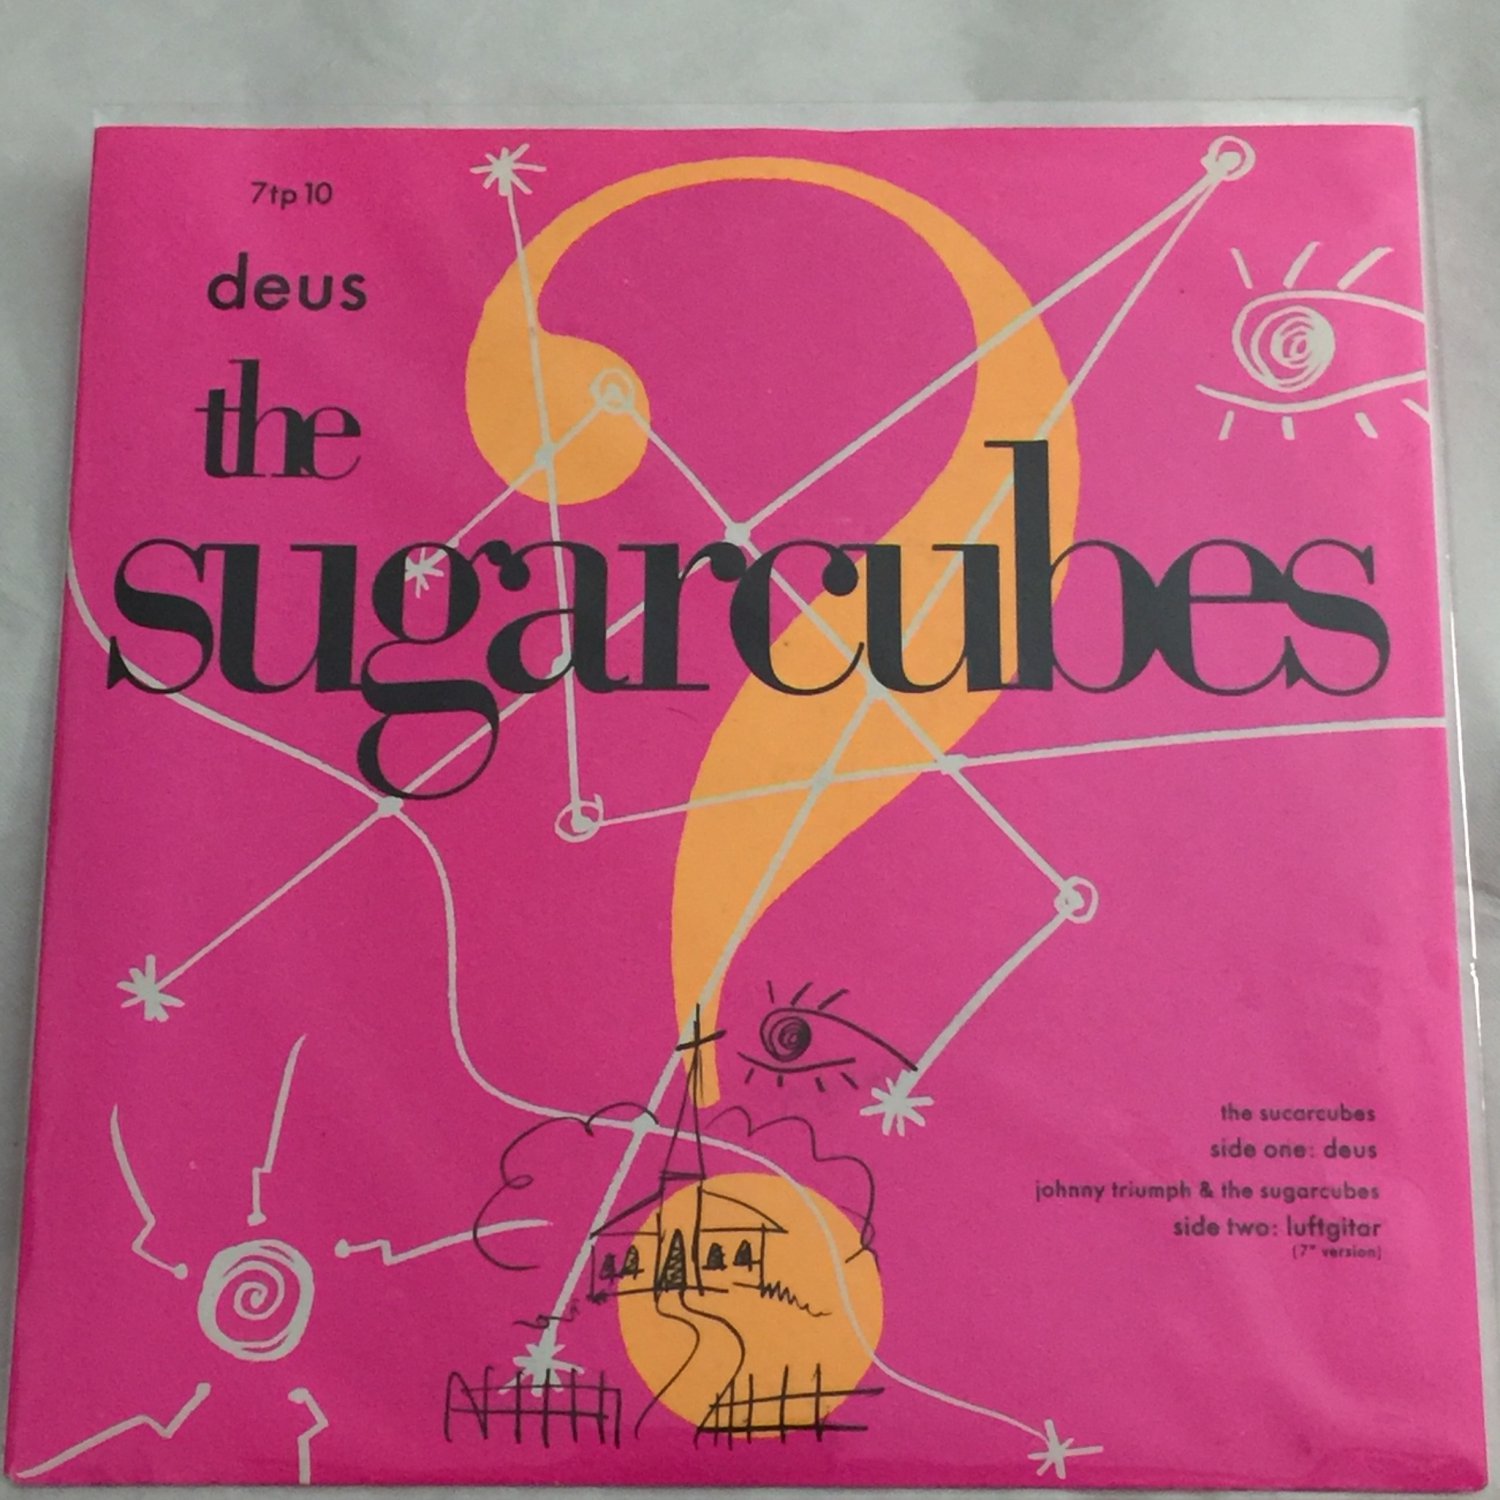 7TP10 - The Sugarcubes - Deus (7") ONE LITTLE INDIAN